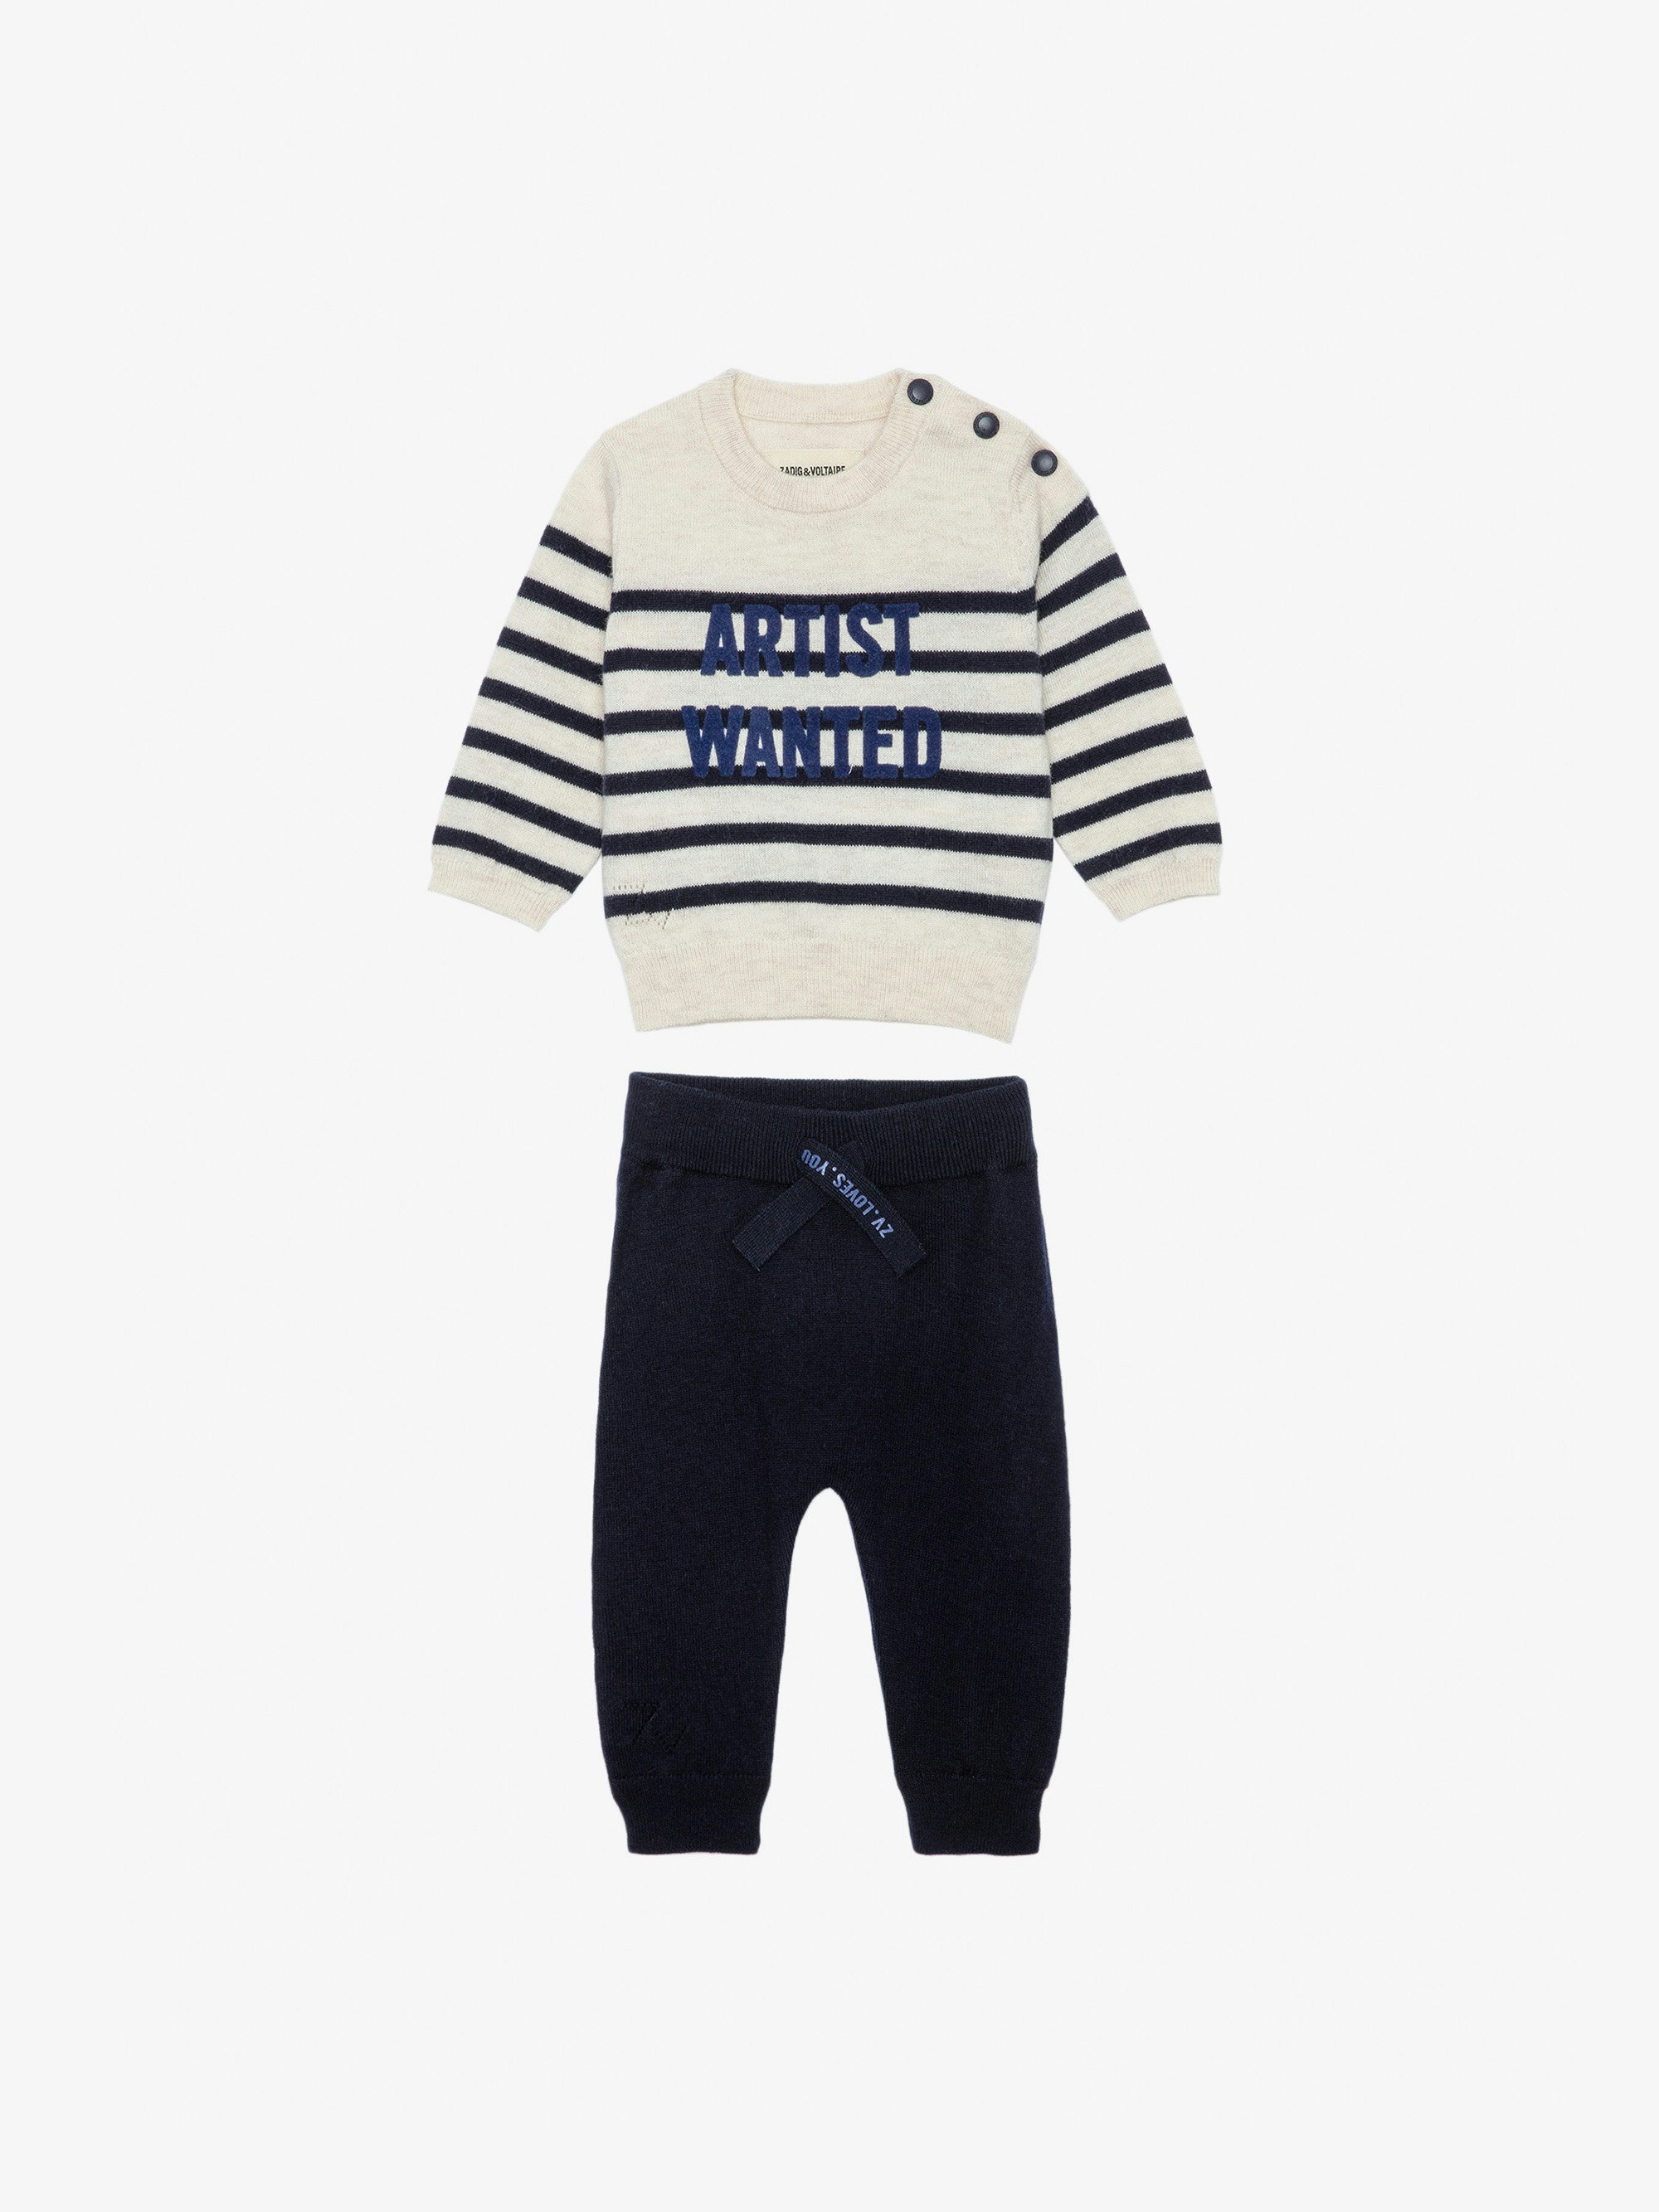 Completo Pona Neonato - Completo maglione a righe con scritta "Artist Wanted" e pantaloni in maglia blu da neonato.